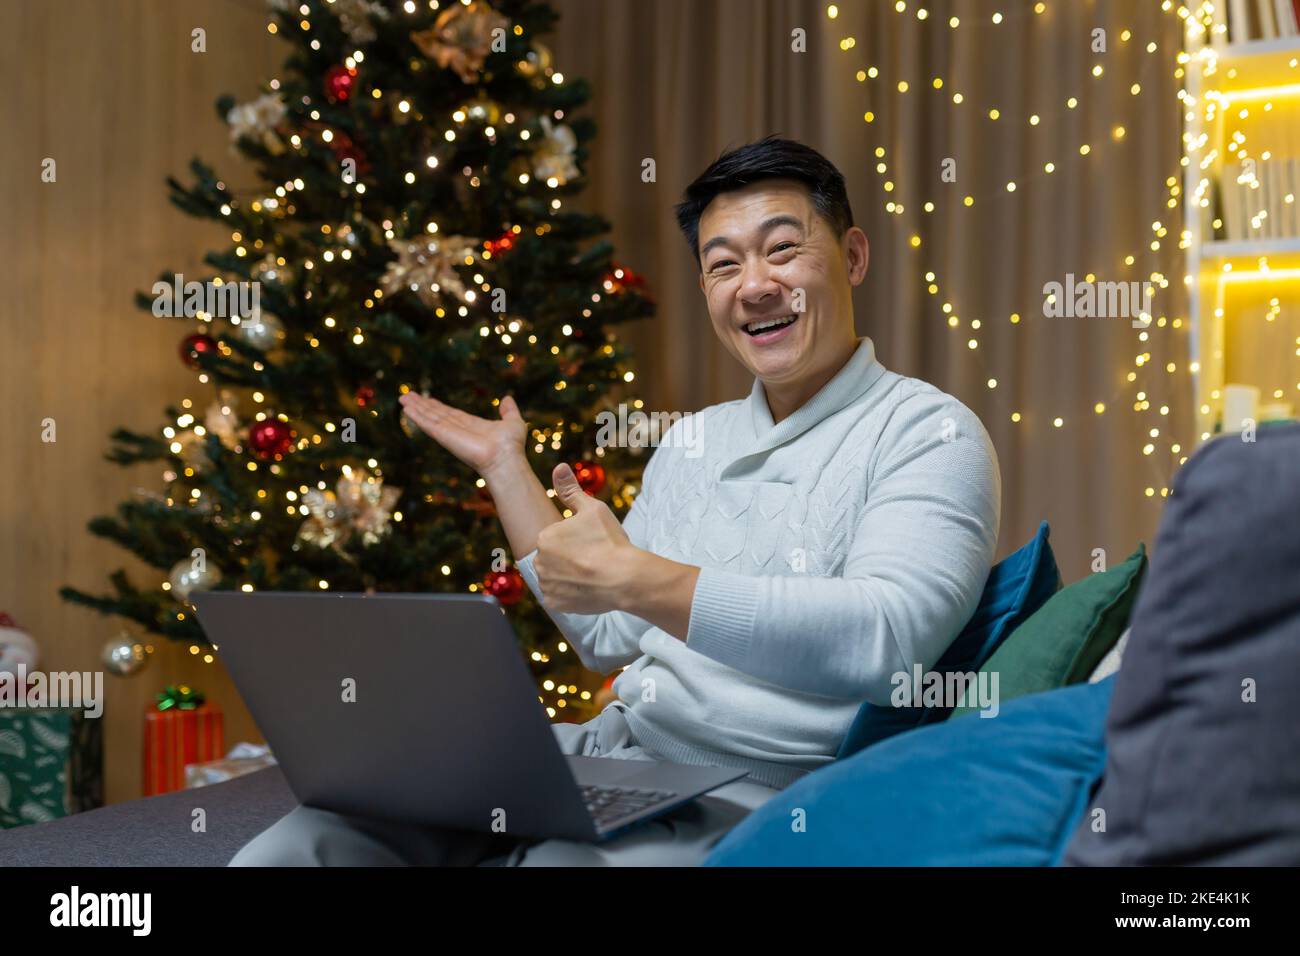 Portrait de fête d'un jeune homme asiatique beau. Assis à la maison sur le canapé près de l'arbre de Noël, tenant un ordinateur portable, regardant la caméra, souriant, pointant vers l'arbre, pointant vers le super. Banque D'Images